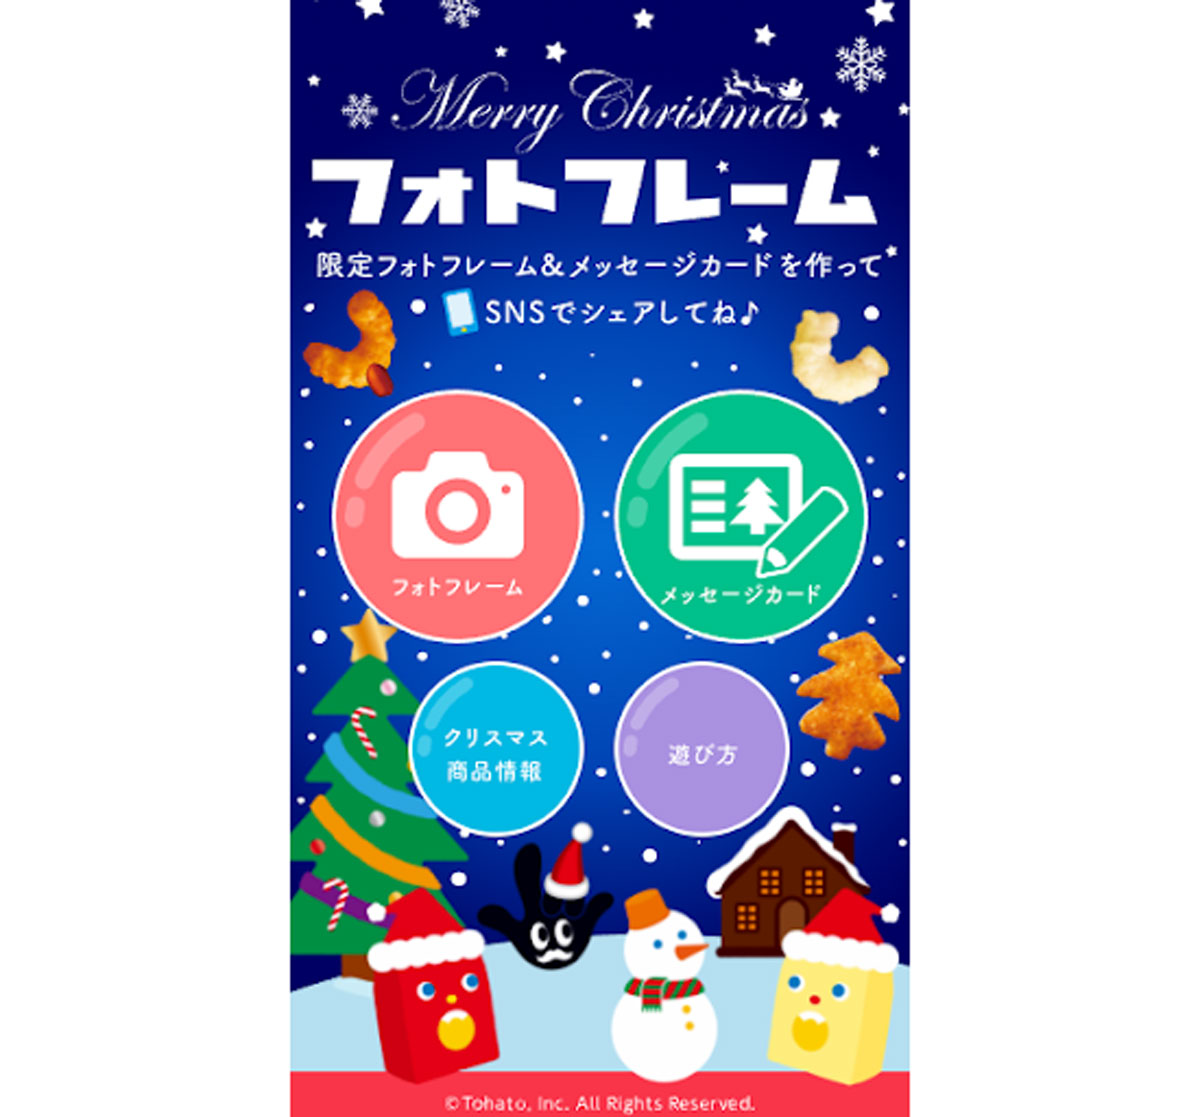 クリスマス限定ARフォトフレーム・メッセージカード